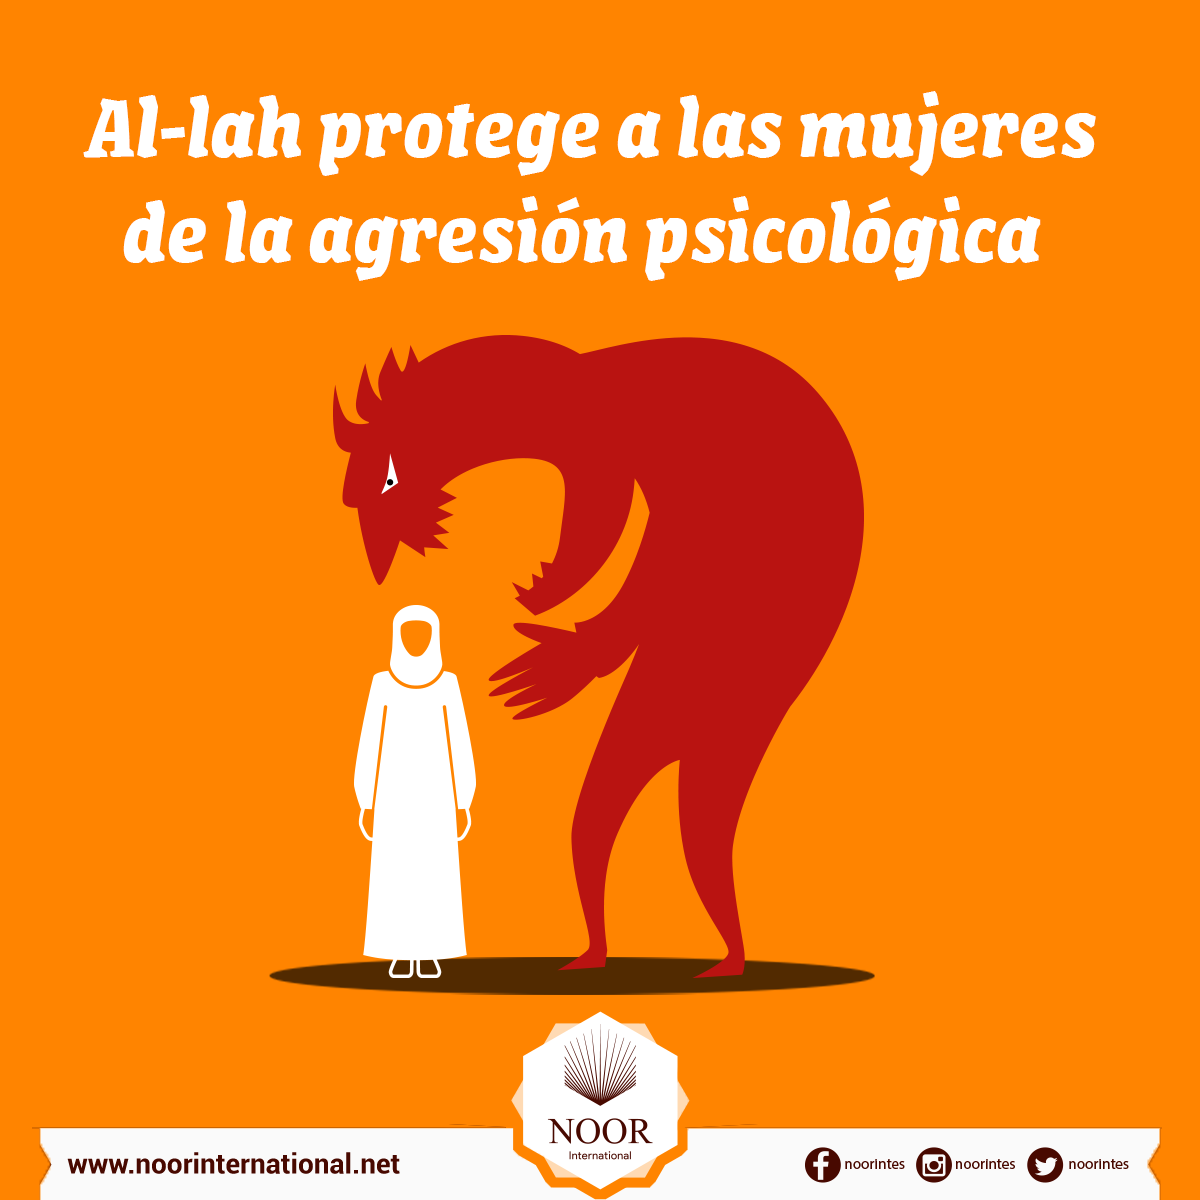 Al-lah protege a las mujeres de la agresión psicológica